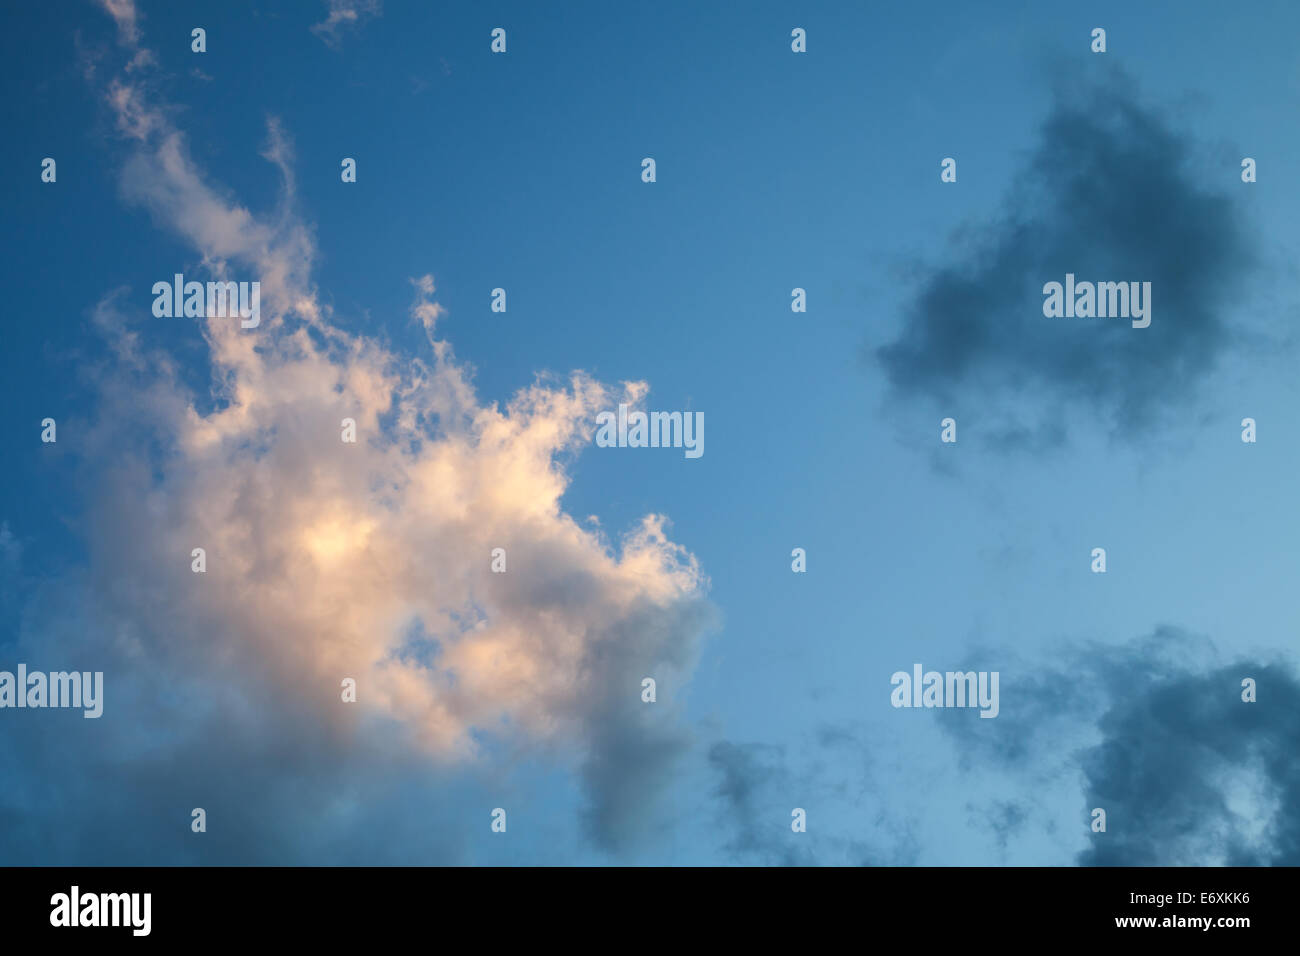 Las nubes en el cielo nocturno, fondo textura fotográfica Foto de stock